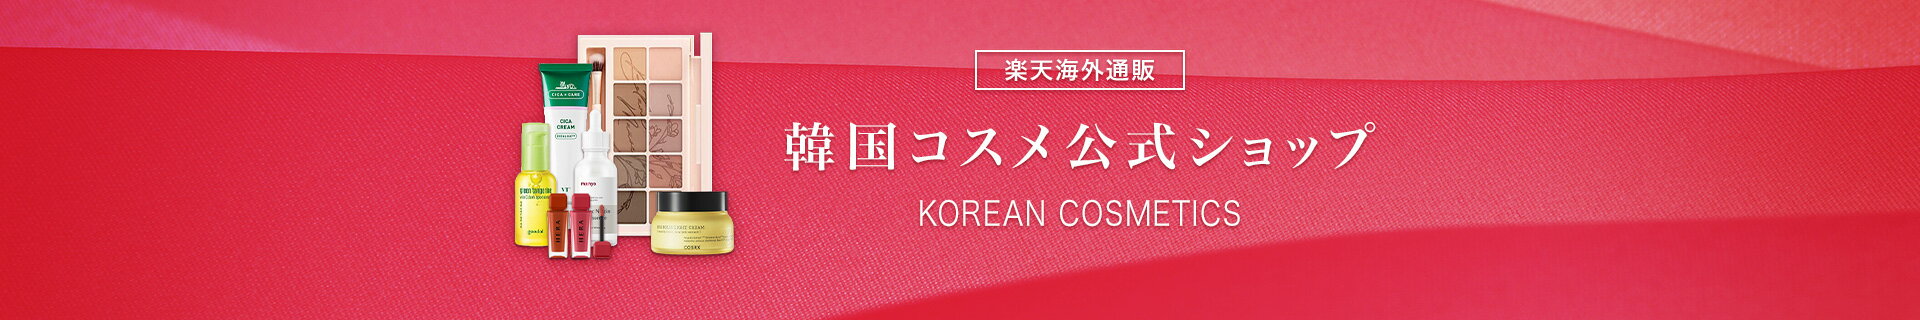 【楽天市場】海外通販韓国コスメ公式ショップのご案内